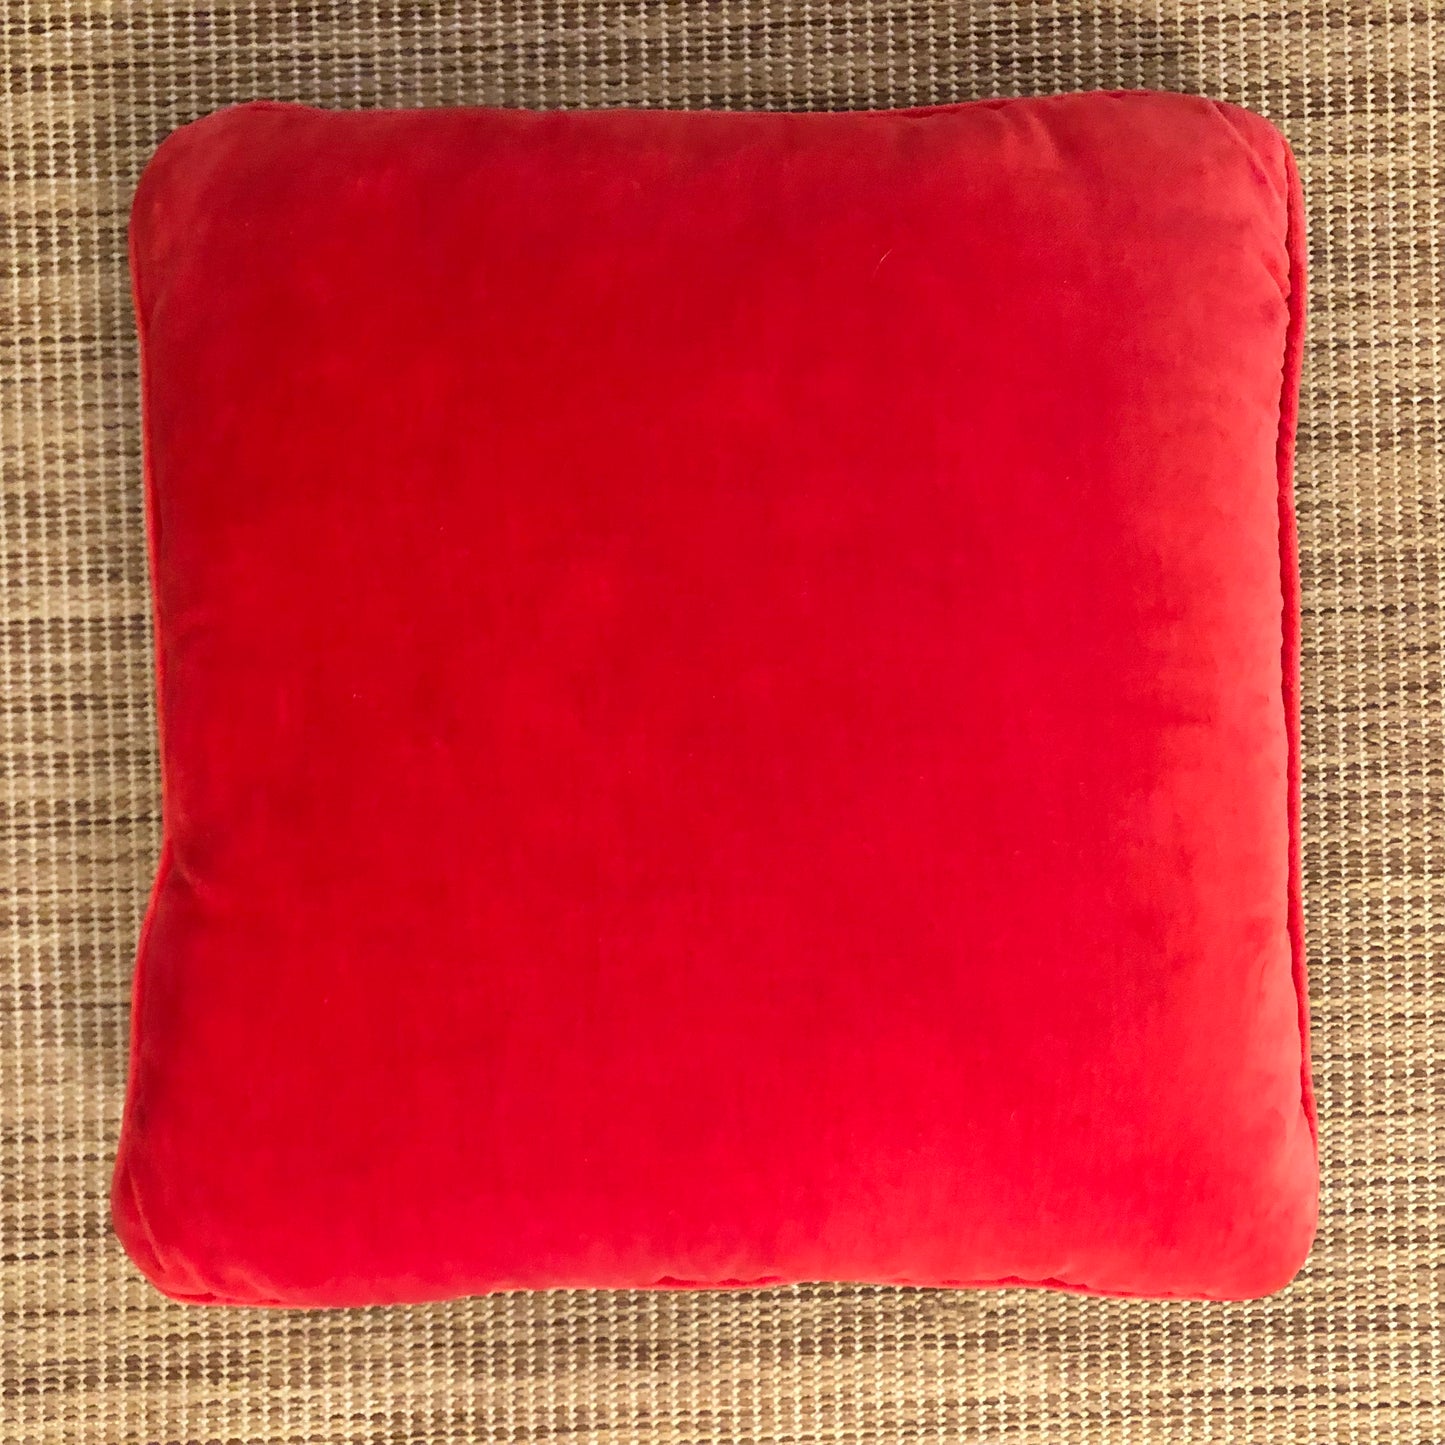 Bargello Needlepoint Pillow